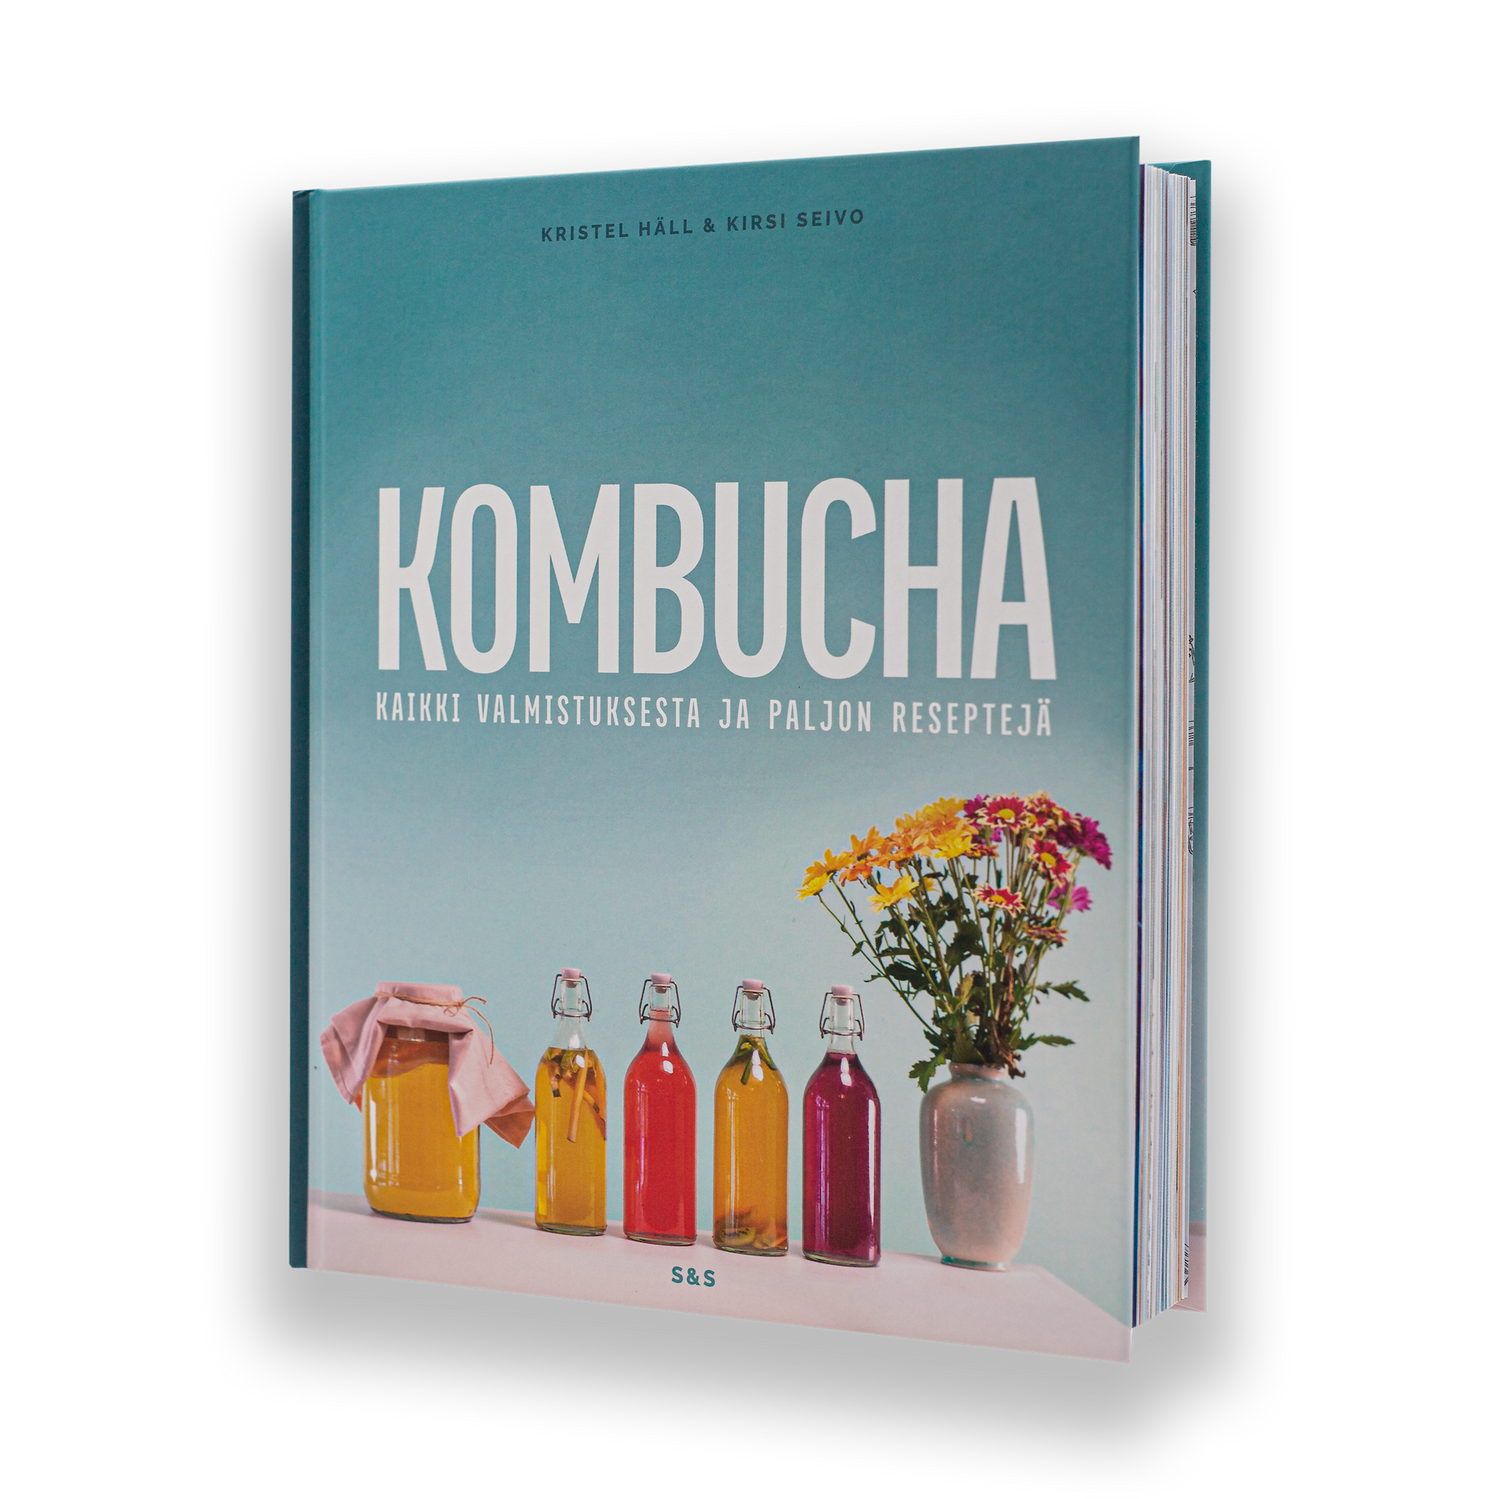 Kombucha brewing – The Good Guys Kombucha